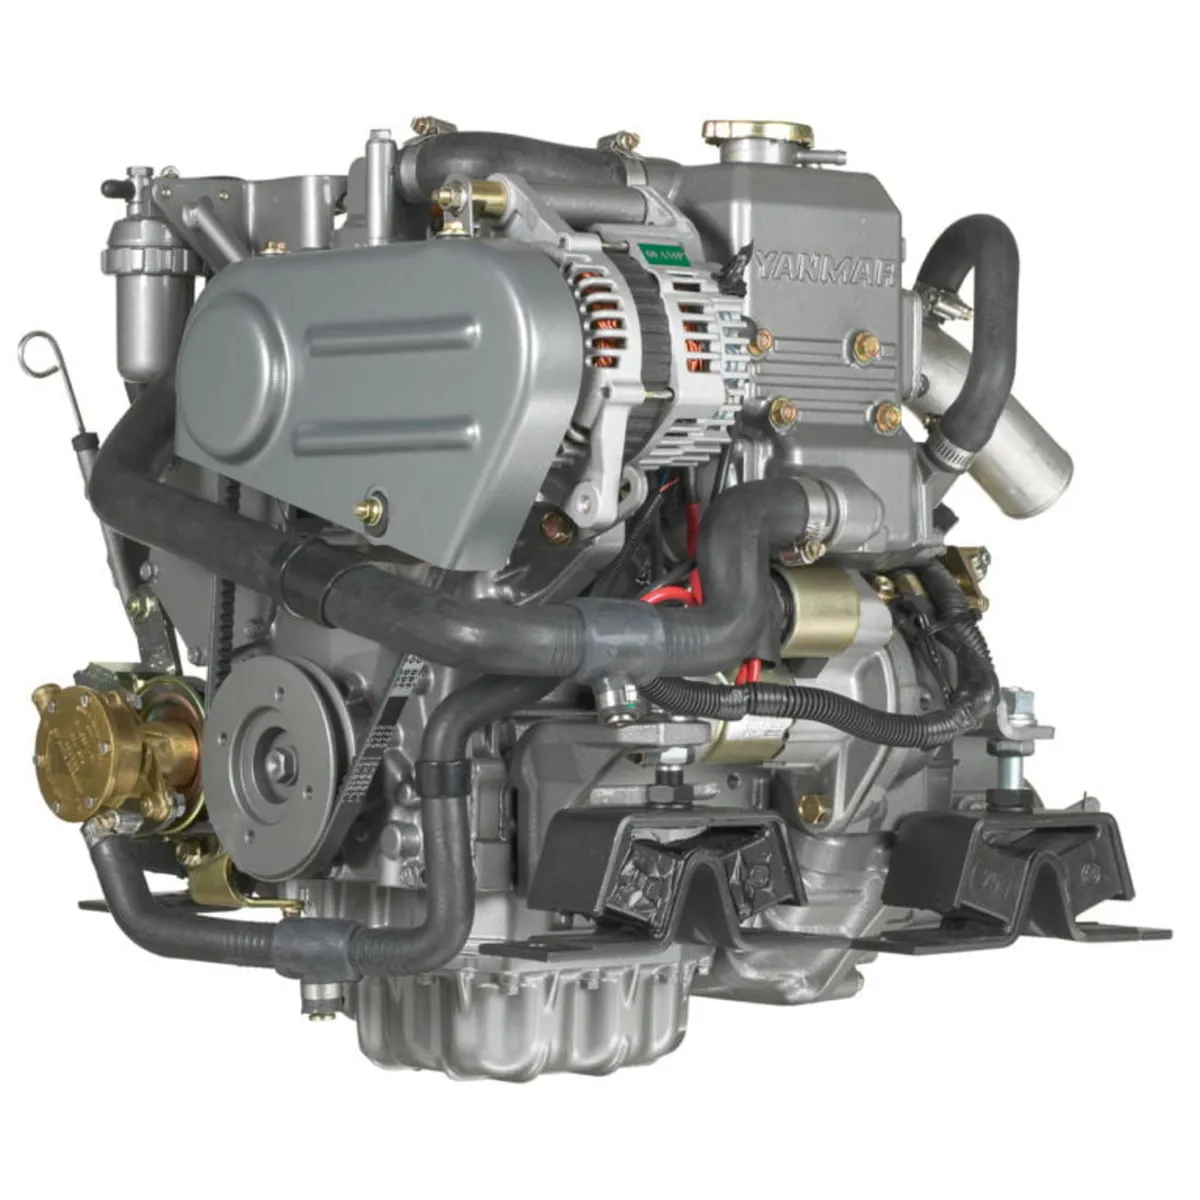 NEW Yanmar Marine Engines (30)